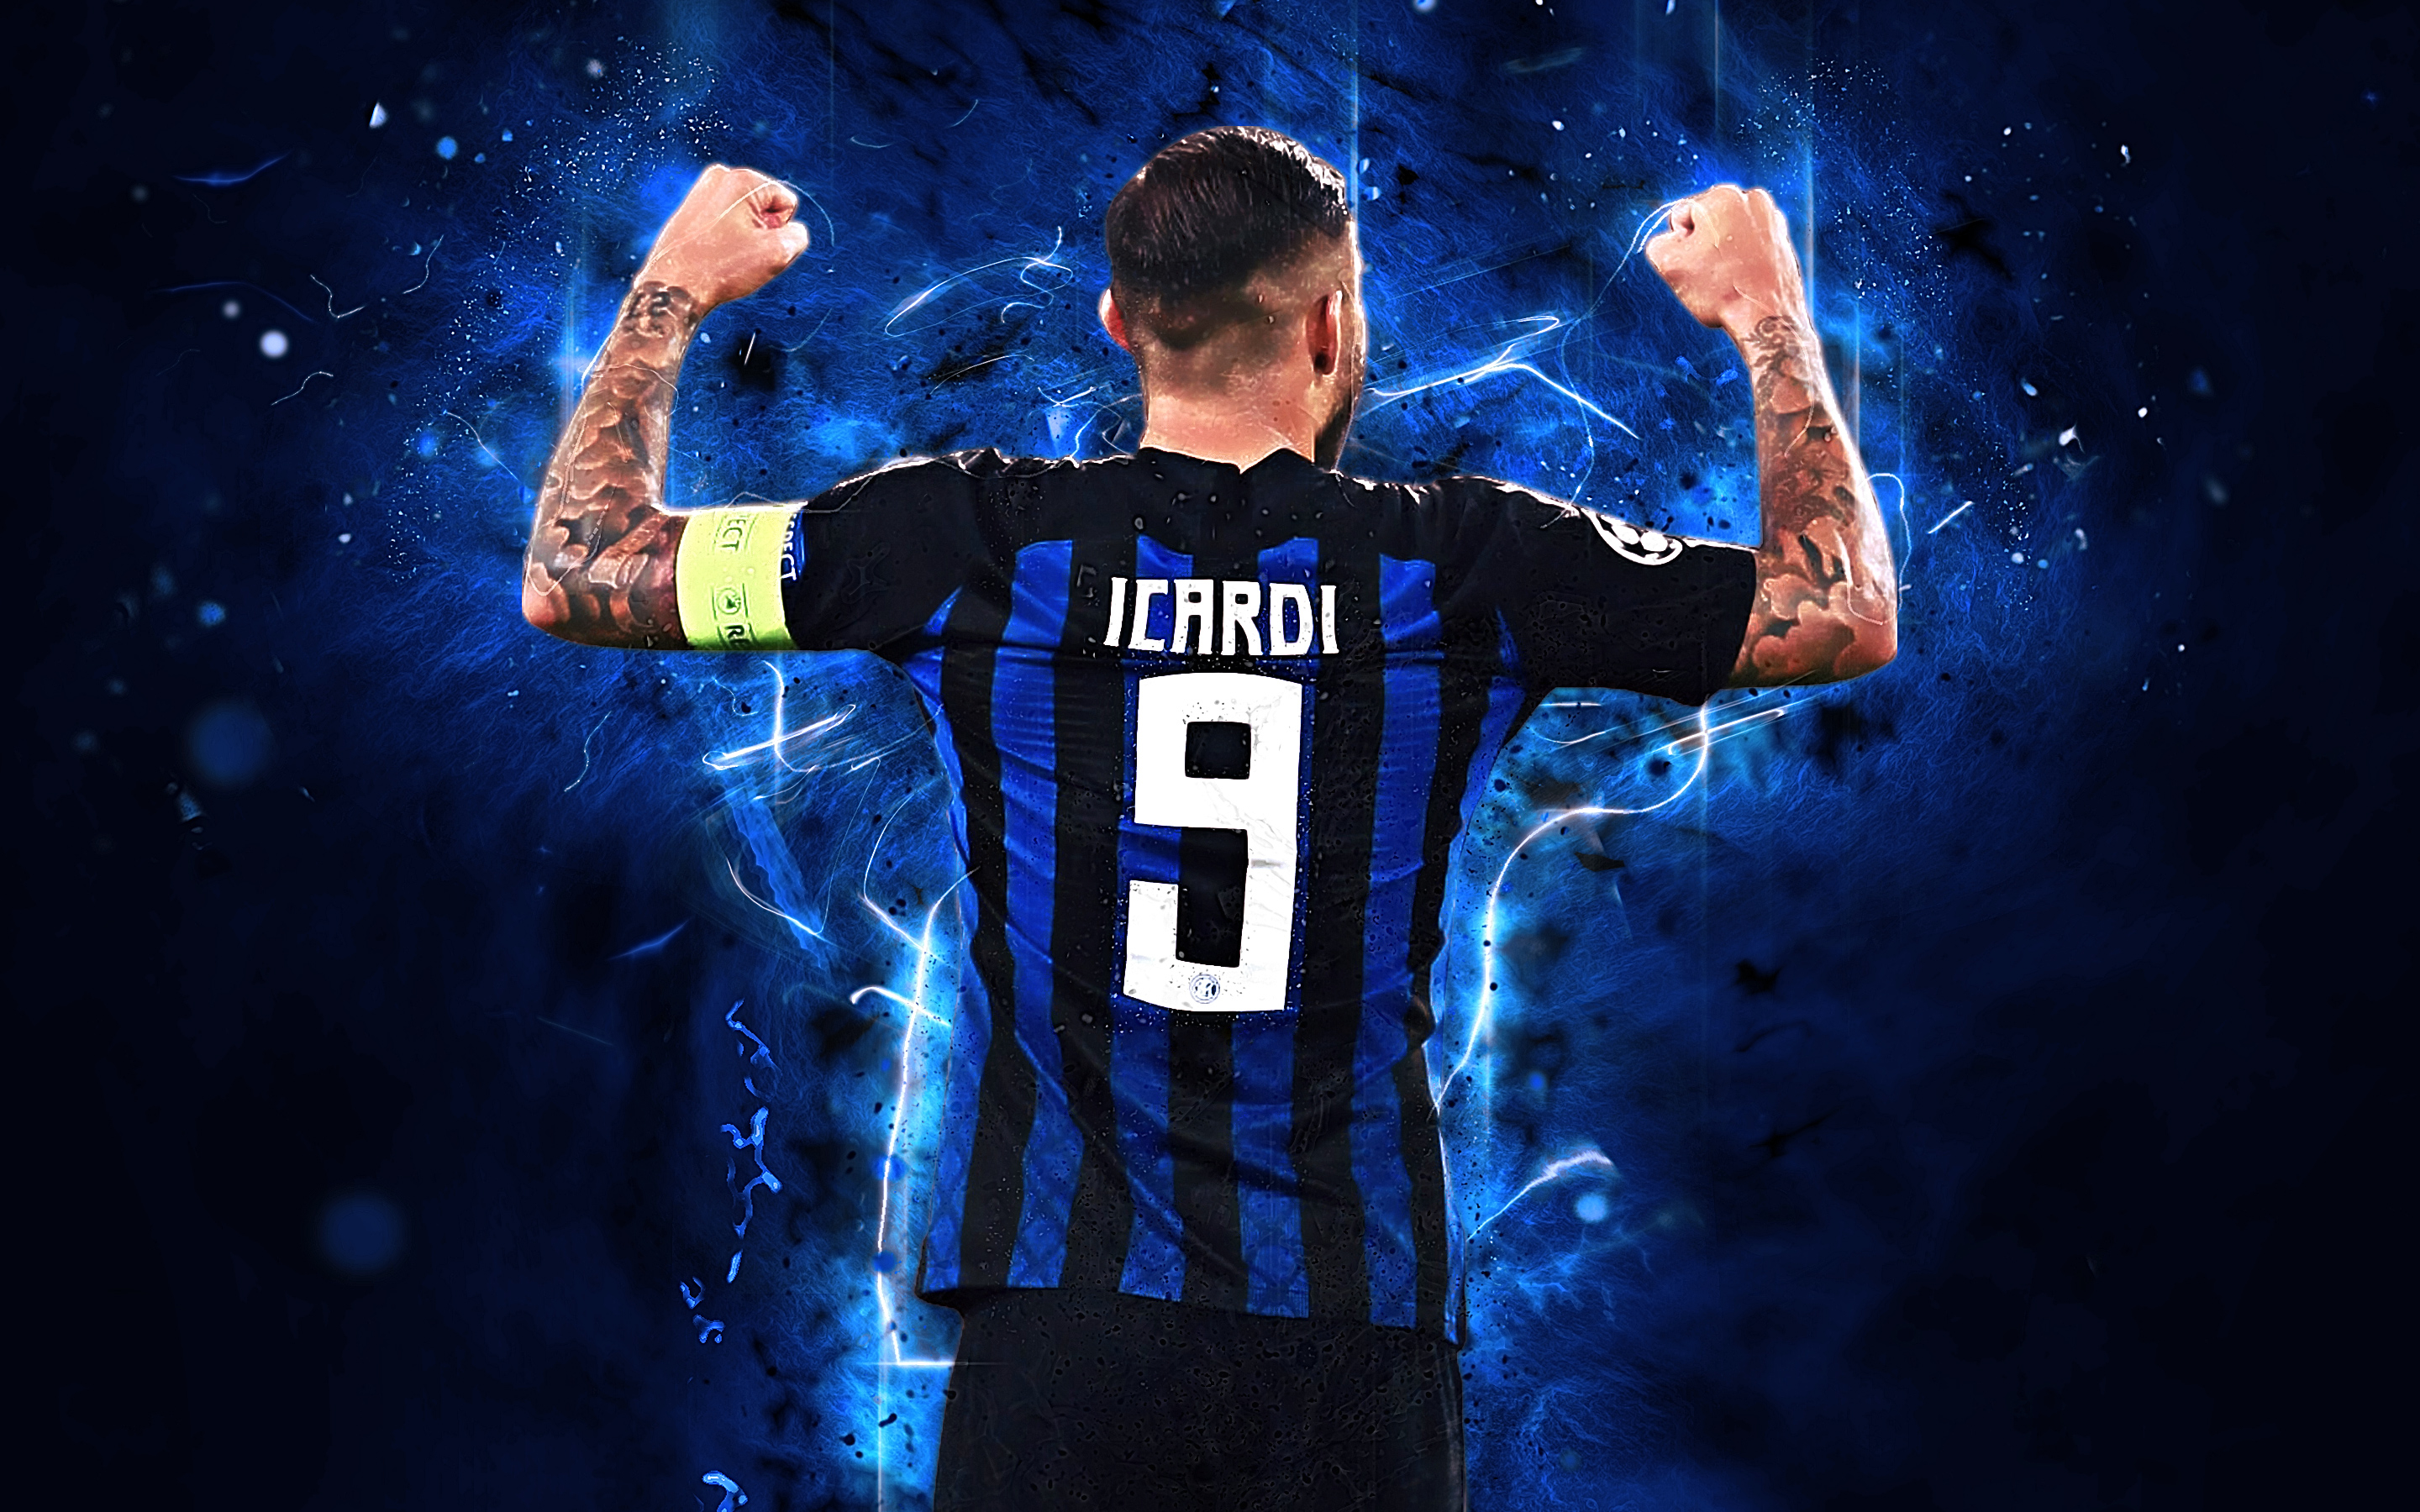 Free download wallpaper Sports, Soccer, Inter Milan, Mauro Icardi on your PC desktop